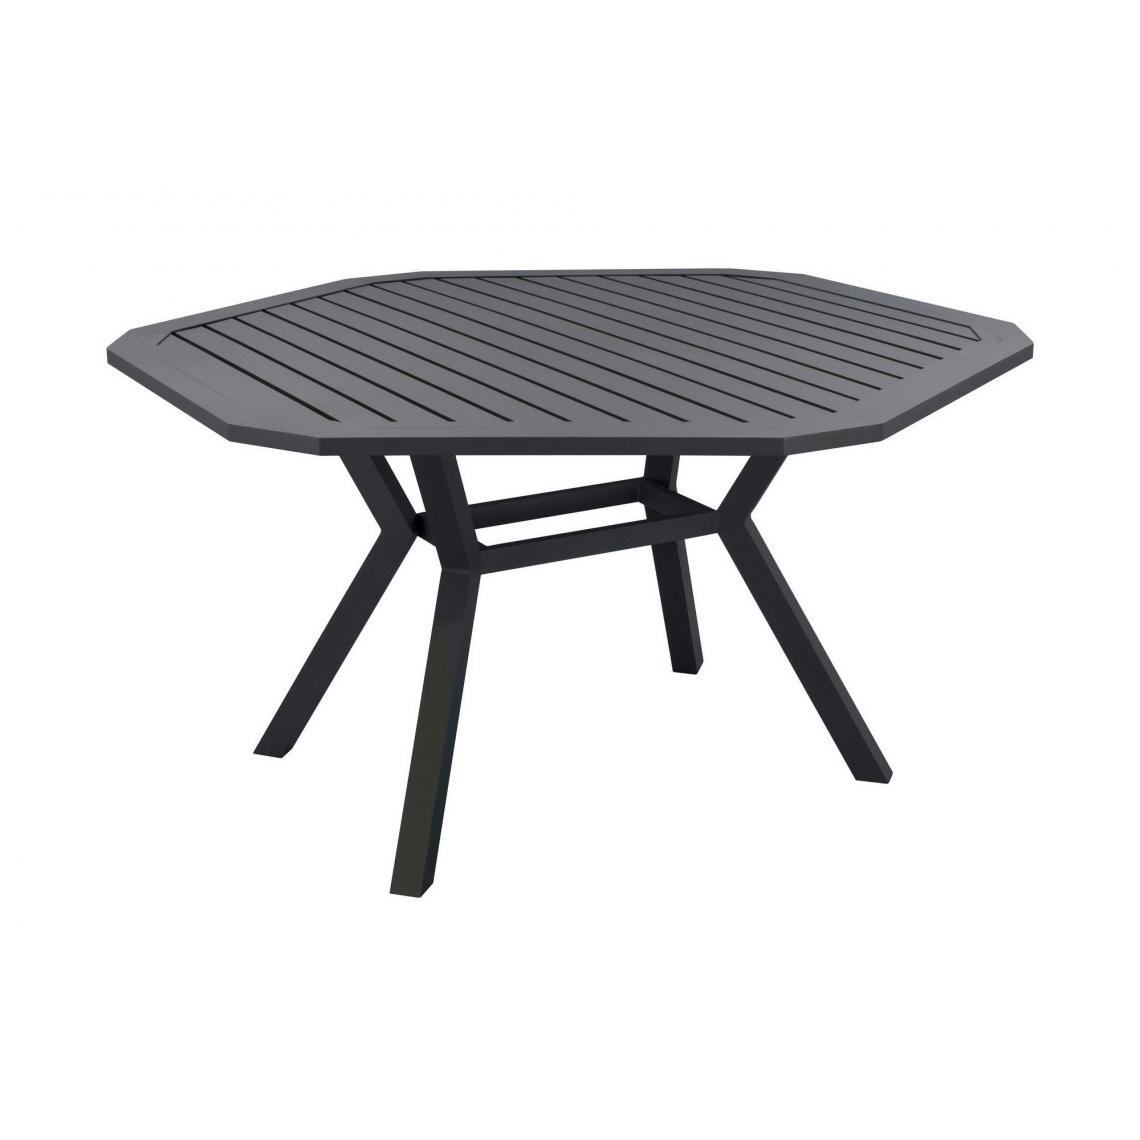 Hevea - Table de jardin en aluminium Ayma 150 cm - Tables de jardin